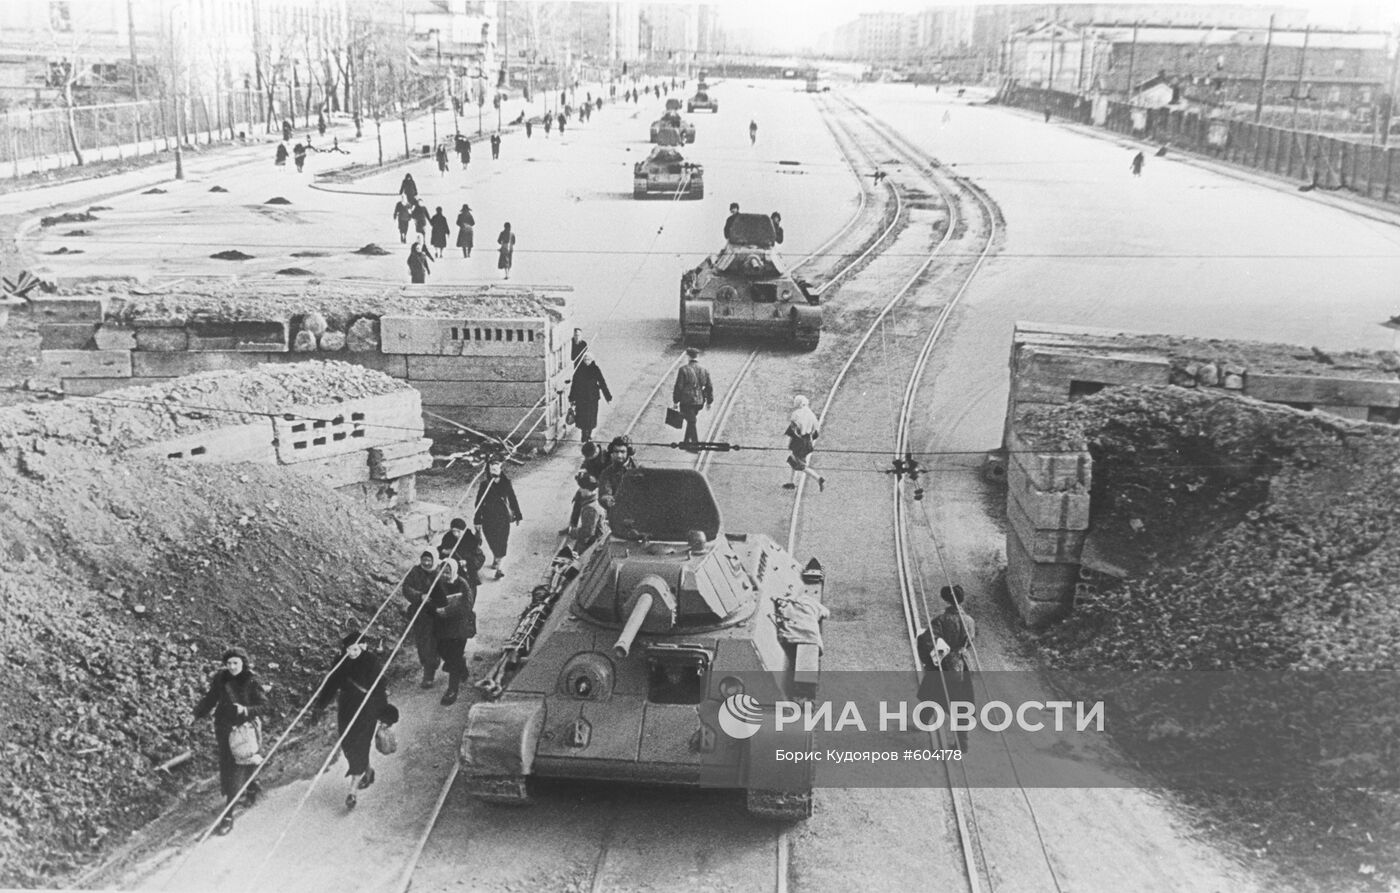 В блокадном Ленинграде